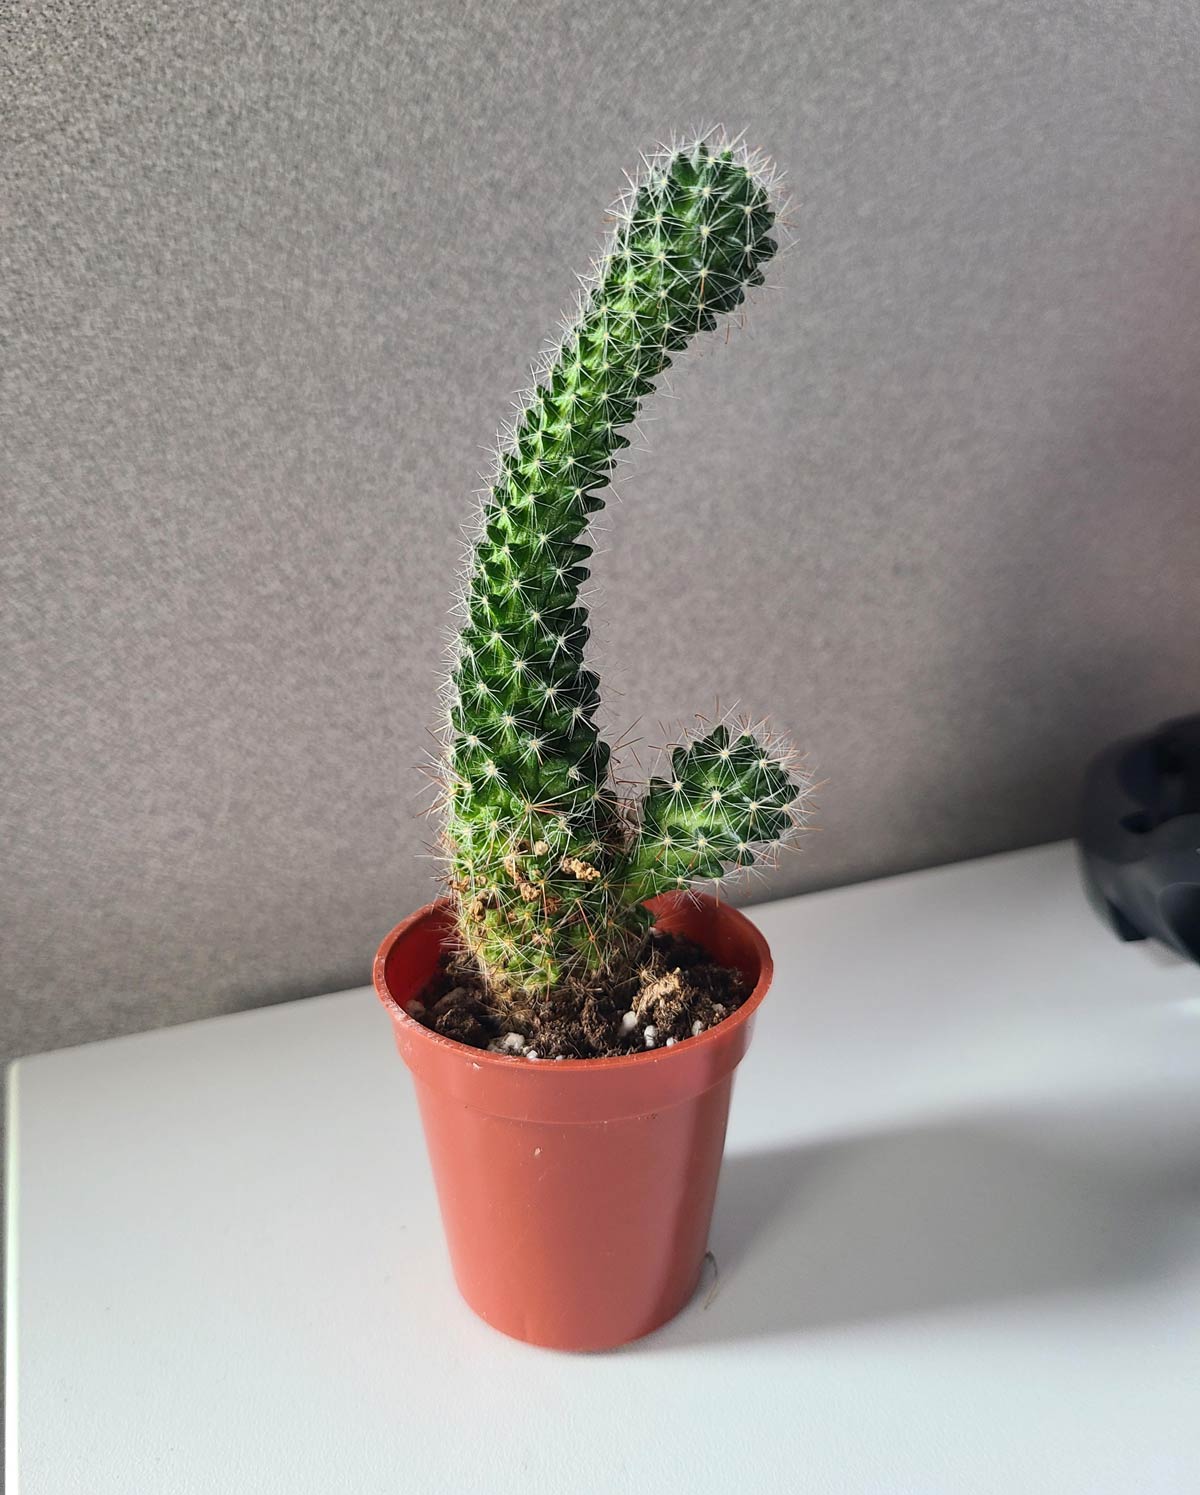 The cactus I bought grew into a forbidden vibrator